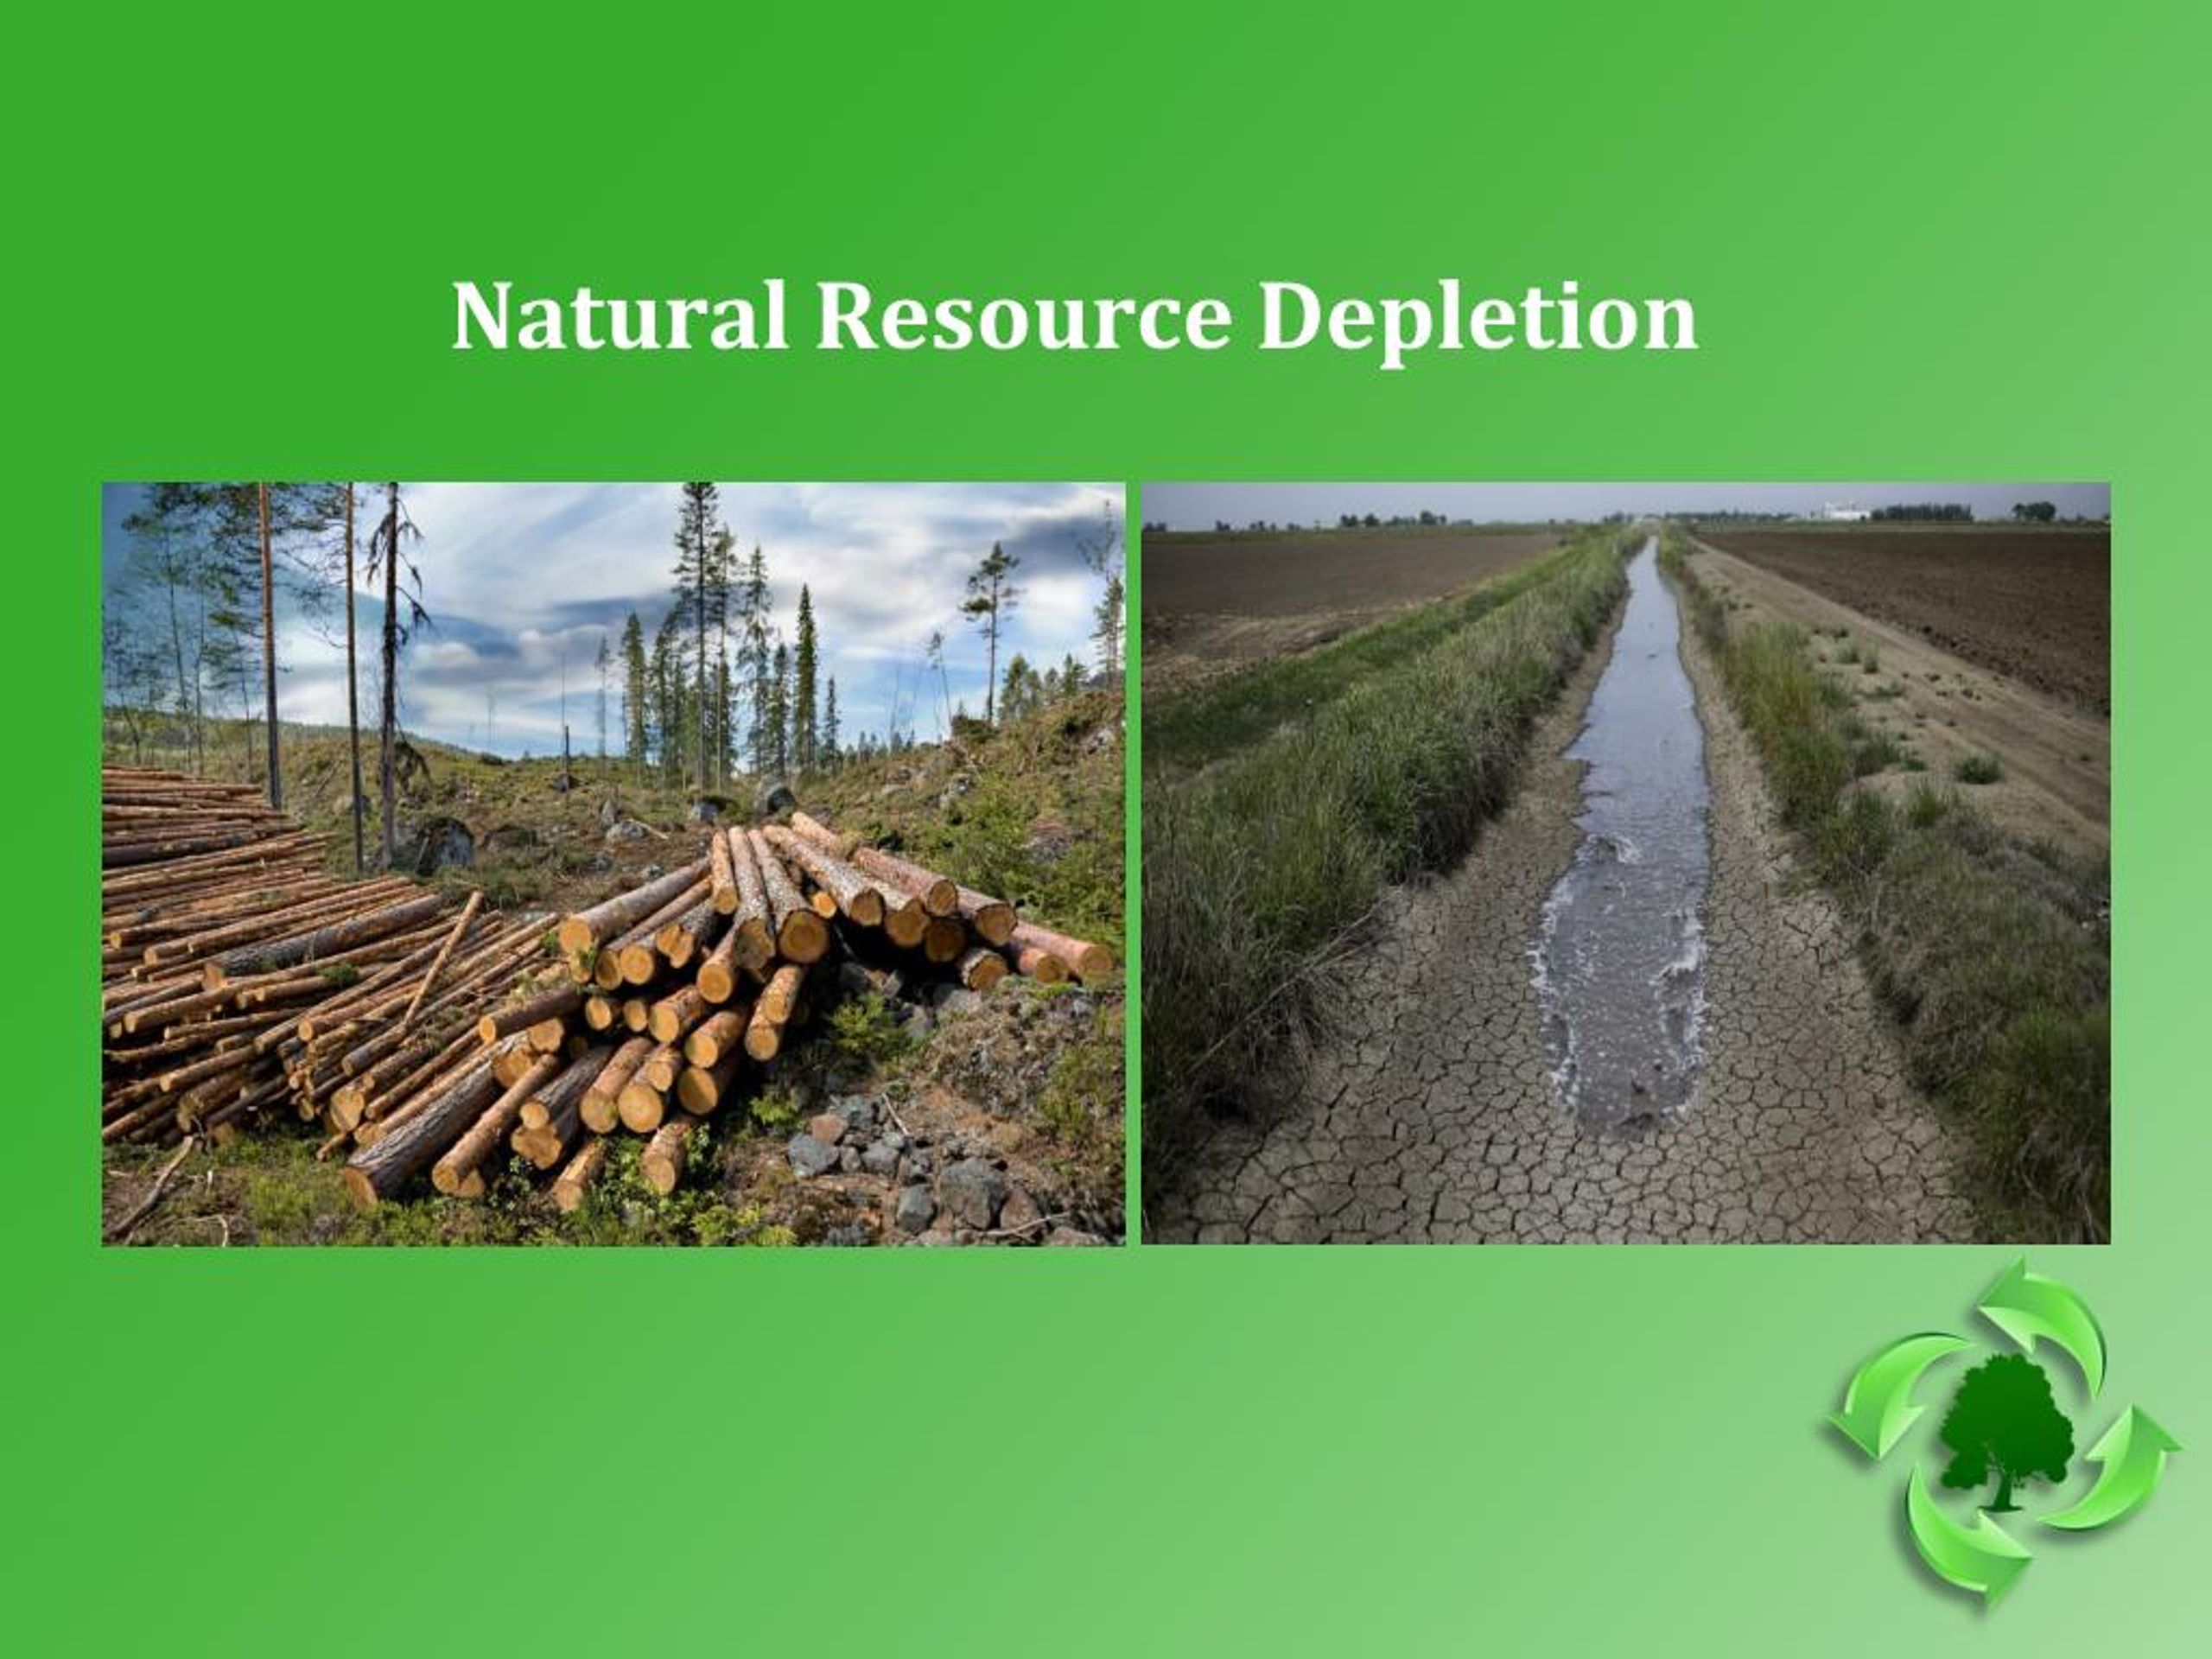 natural resources depletion essay